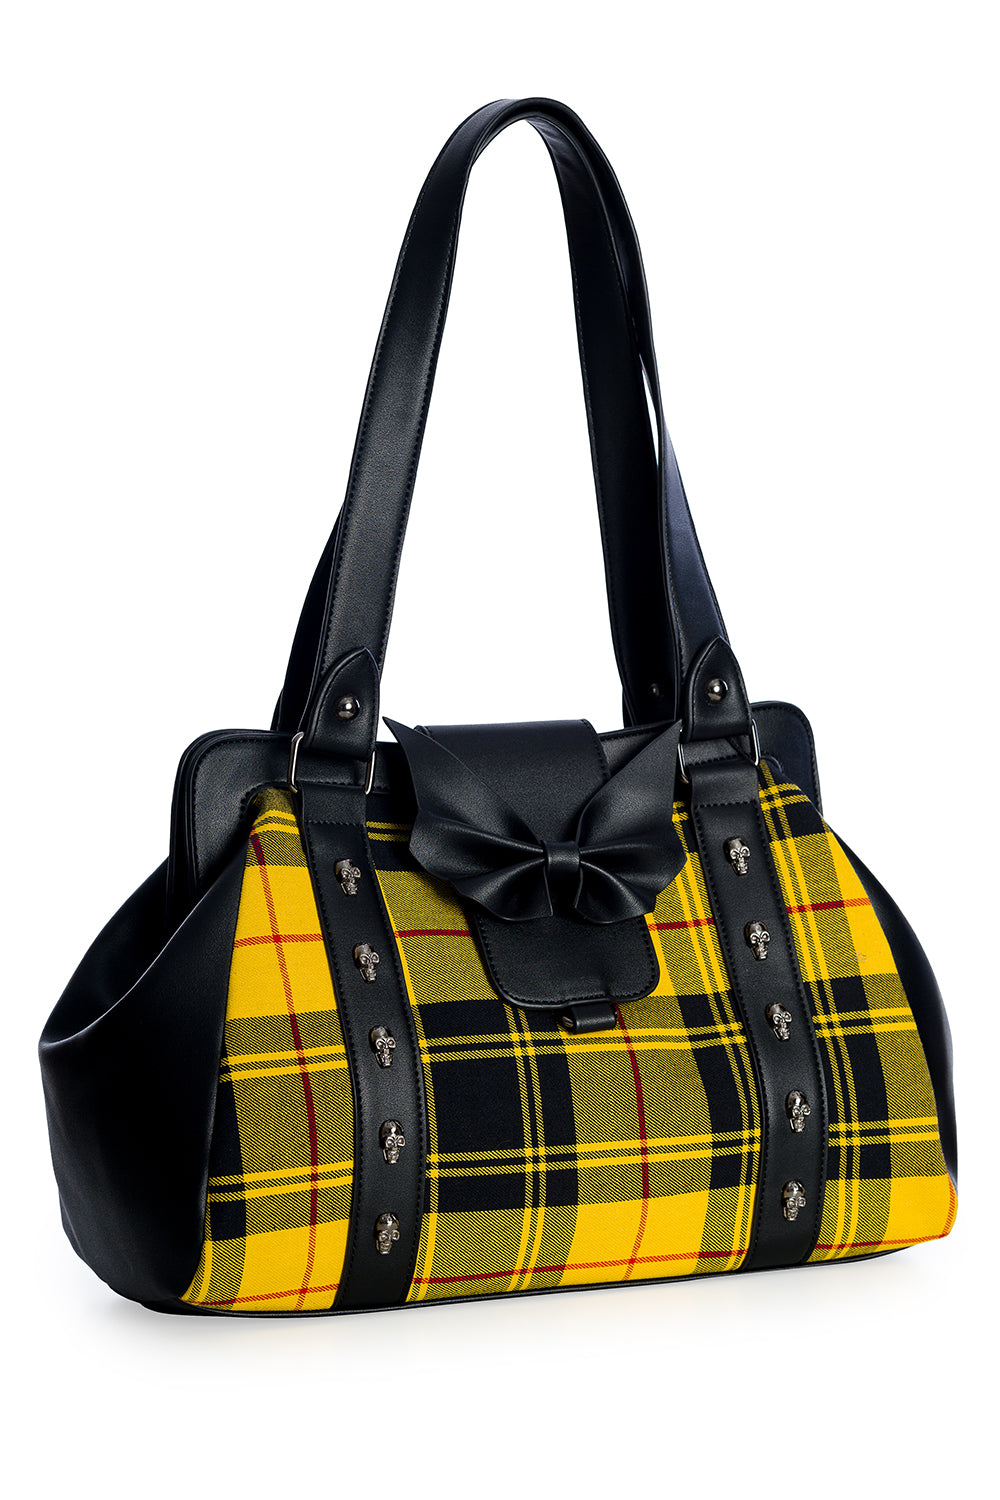 Banned Alternative Krampus Black and Tartan Contrast Handbag